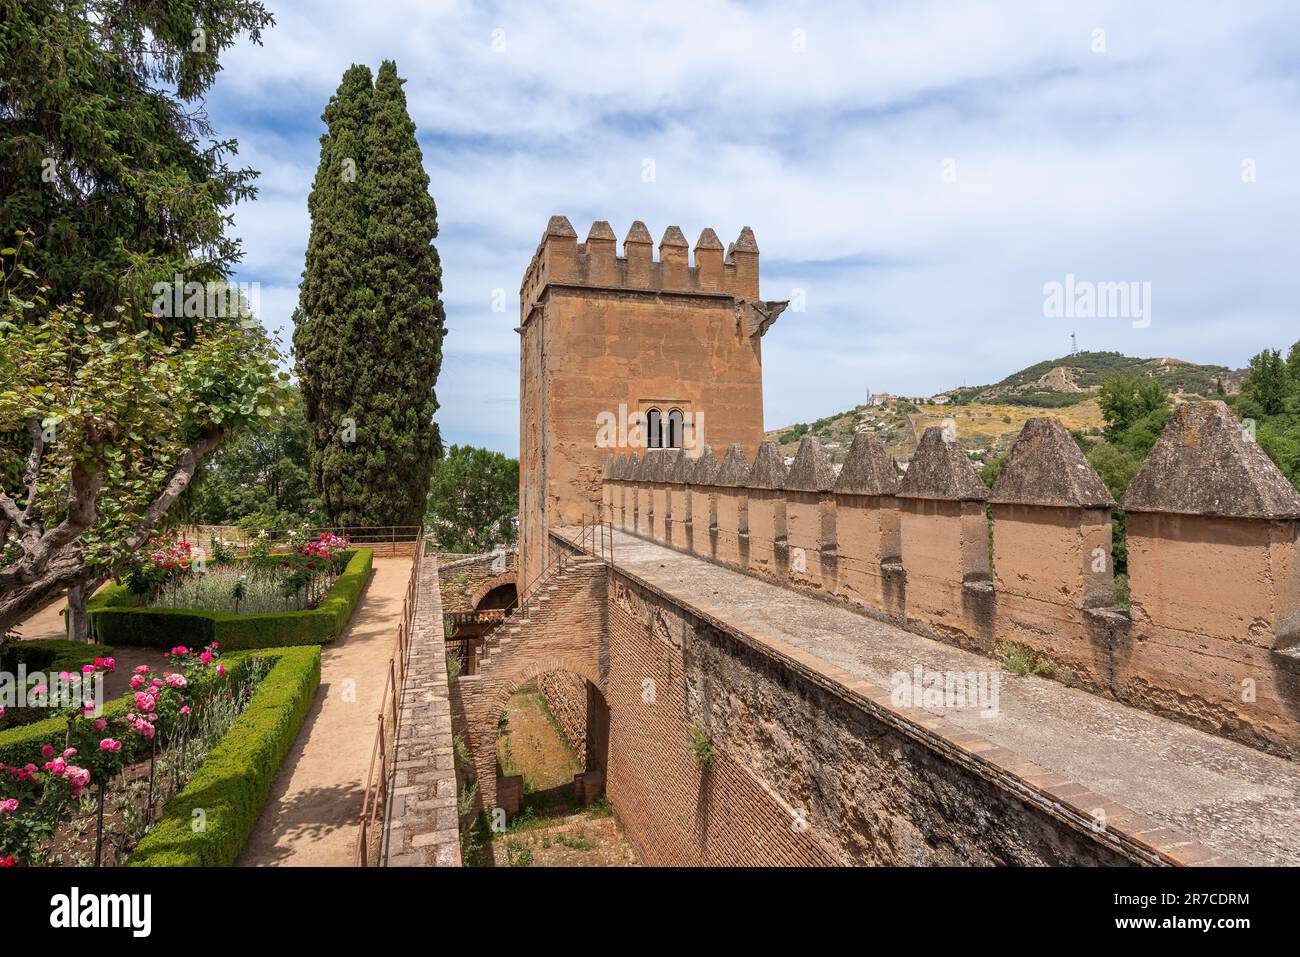 Turm der spitzen Zinnen (Torre de los Picos) am Paseo de las Torres in Alhambra - Granada, Andalusien, Spanien Stockfoto